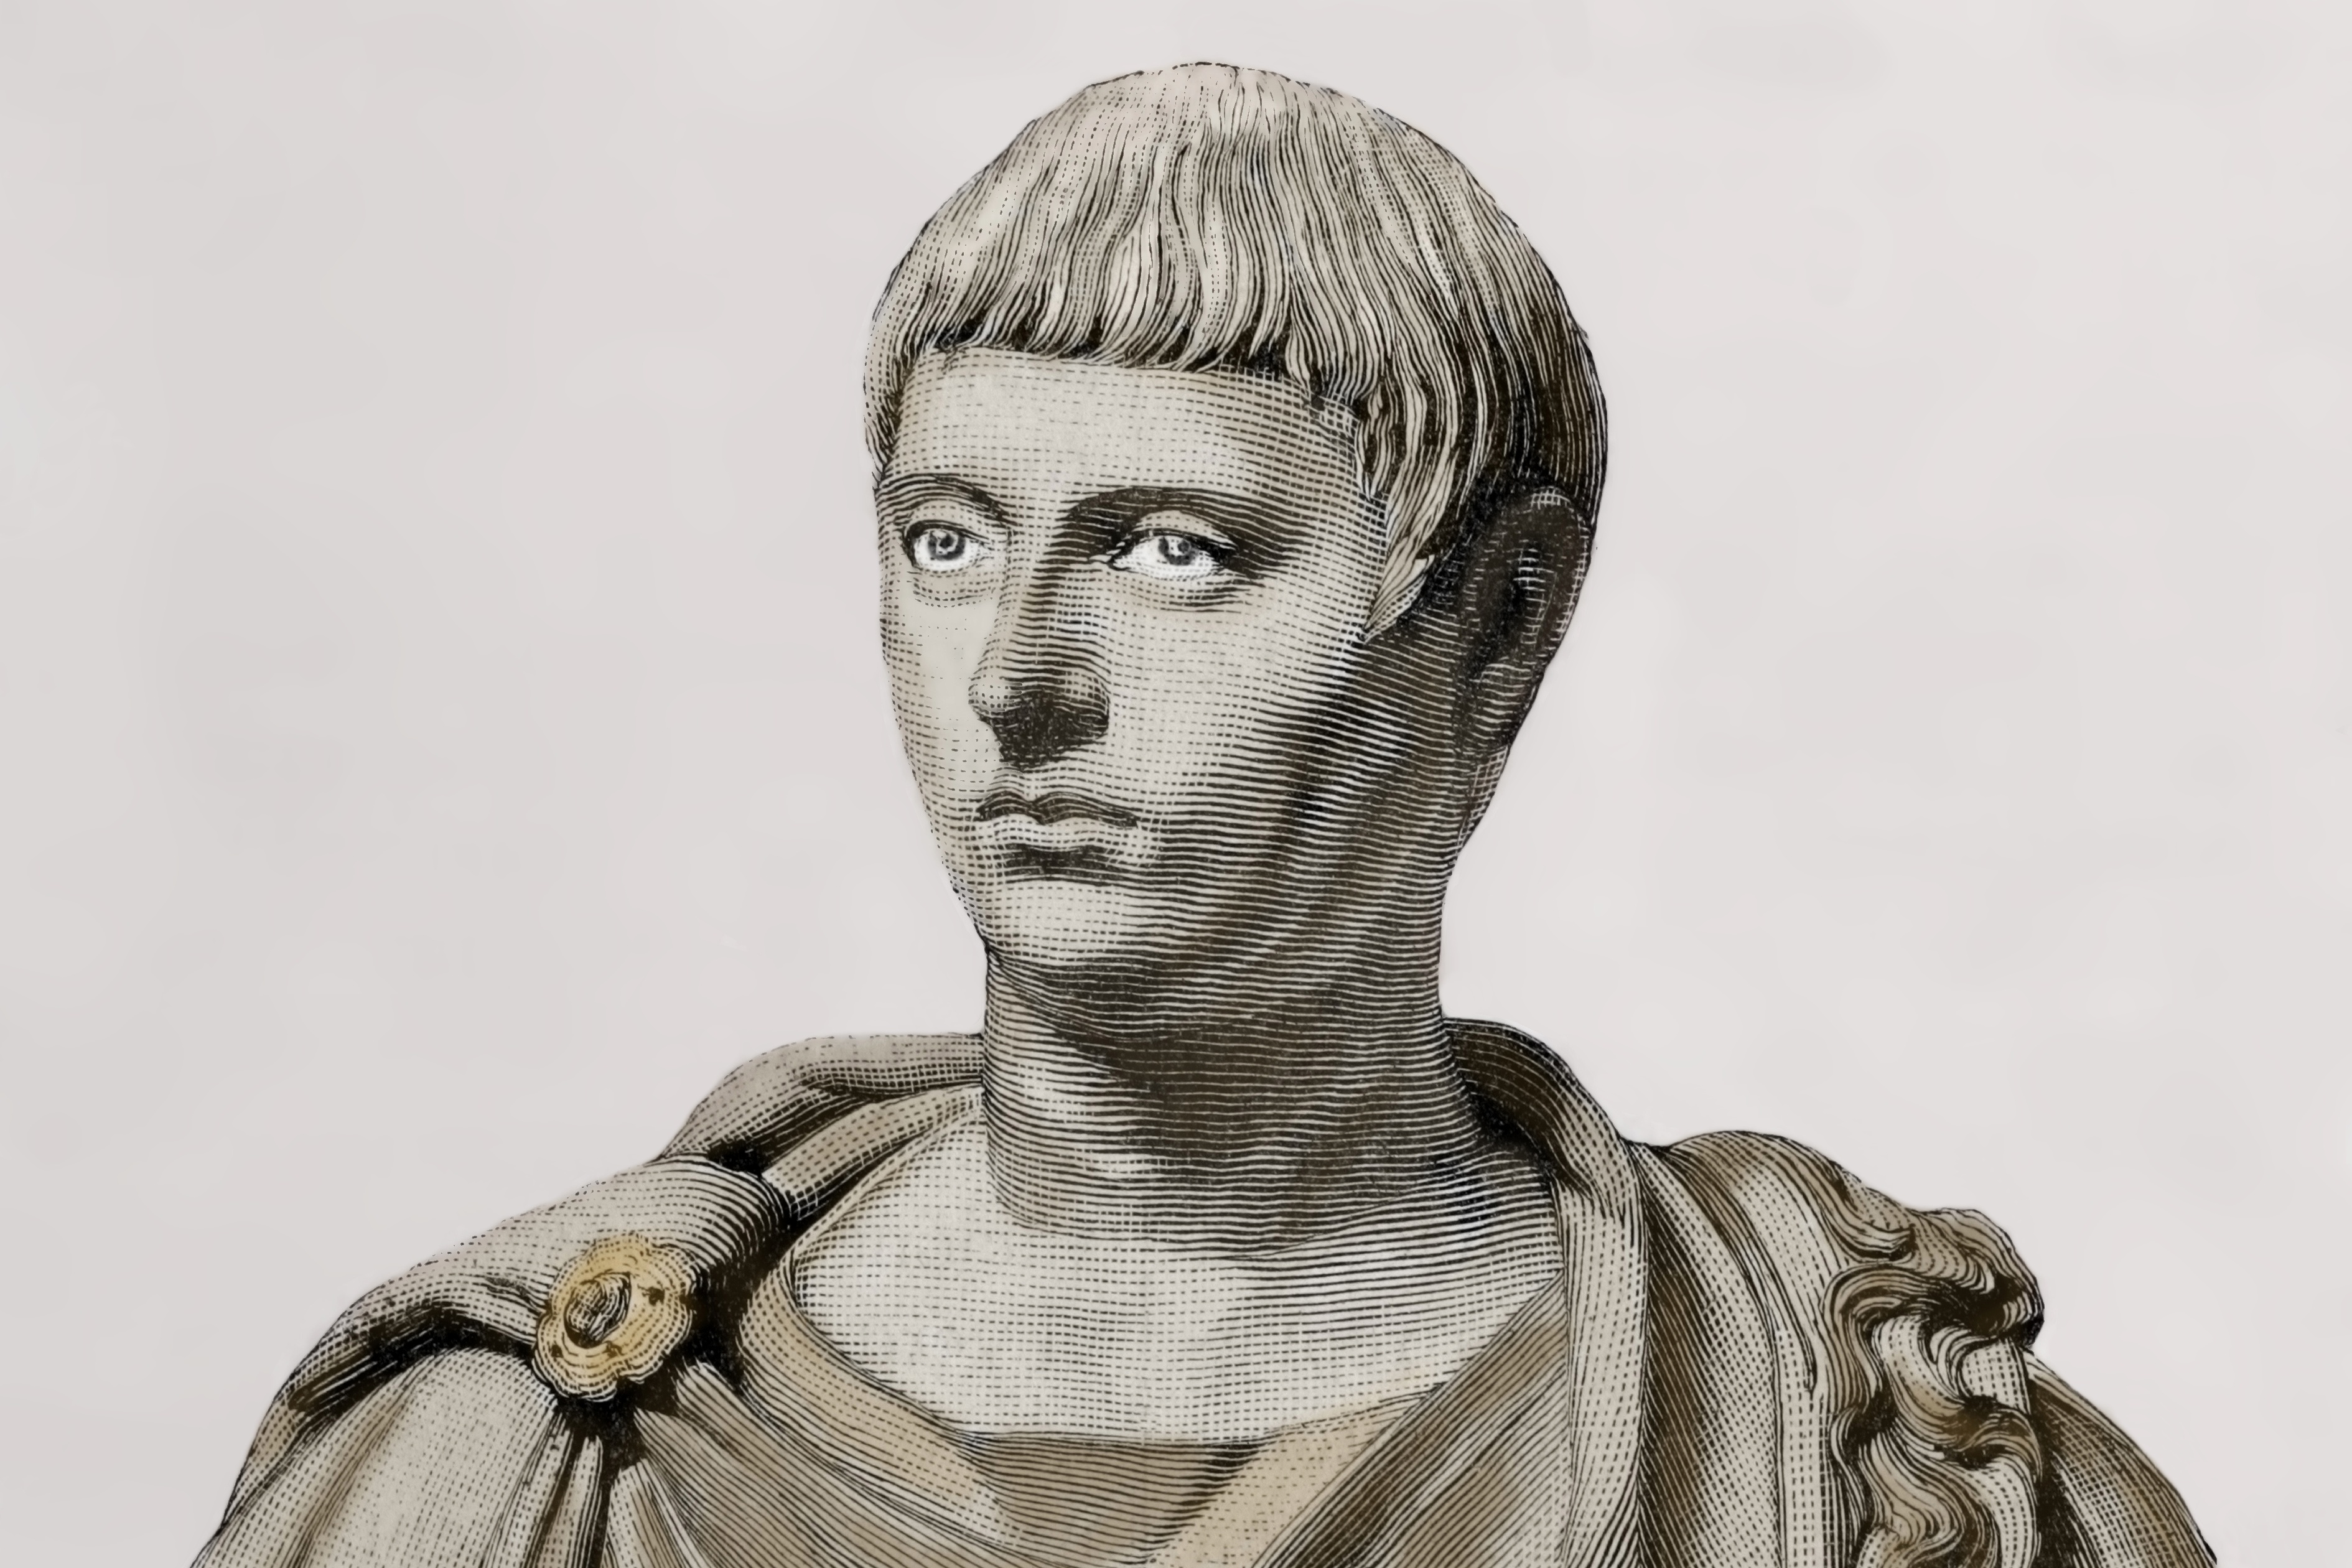 L’affirmation d’un empereur trans simplifie à l’extrême les identités de genre romaines, disent les historiens